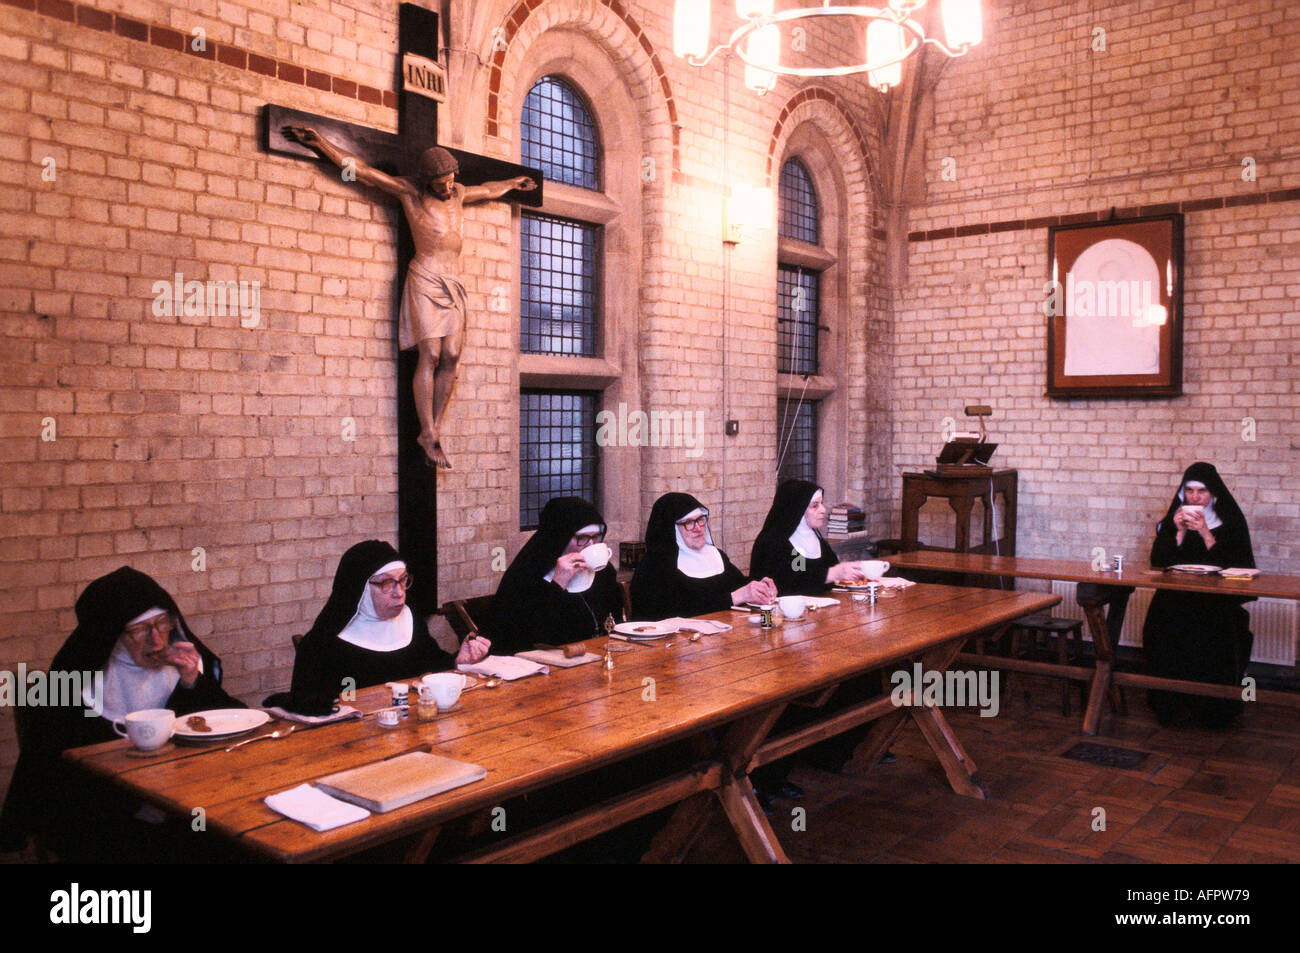 Nonnen in St. Mary am Kreuz Edgware Abbey eine anglikanische Benediktinergemeinschaft. Schwestern im Refektorium, dem klösterlichen Speisesaal. Middlesex UK 1980er Jahre 1989 Stockfoto